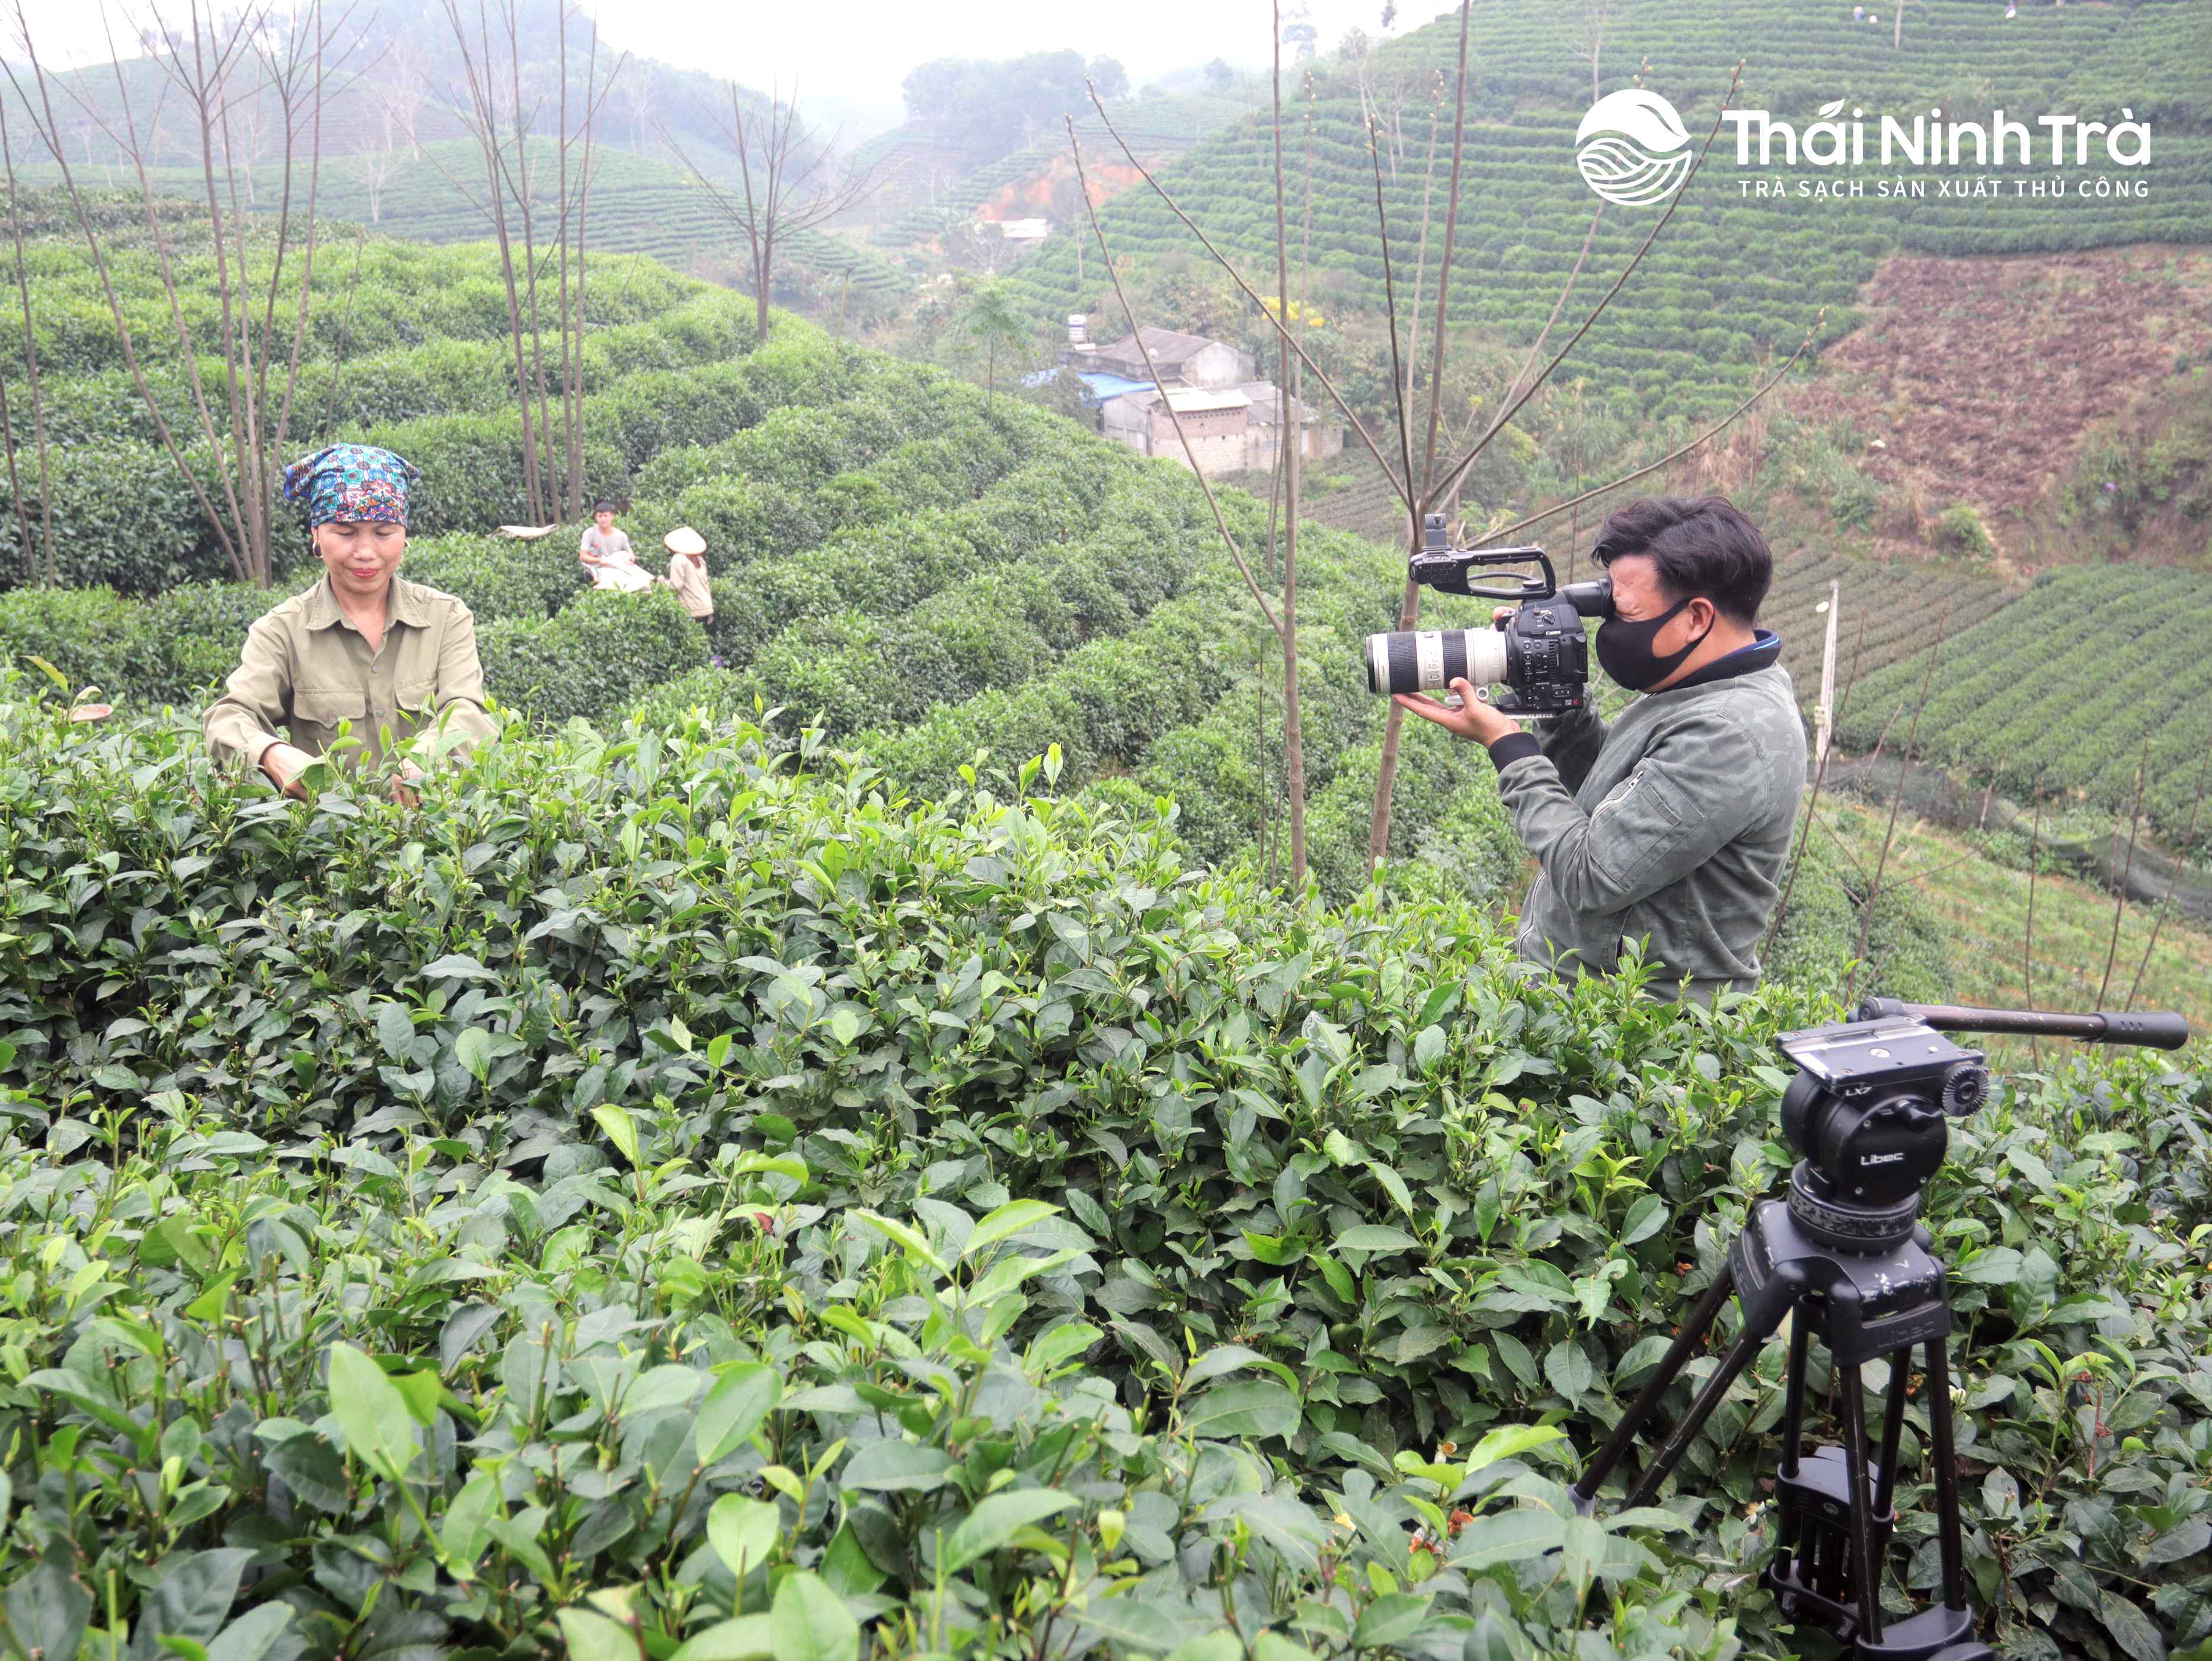 Thái Ninh Trà sắp lên sóng VTV2 Đài truyền hình Việt Nam